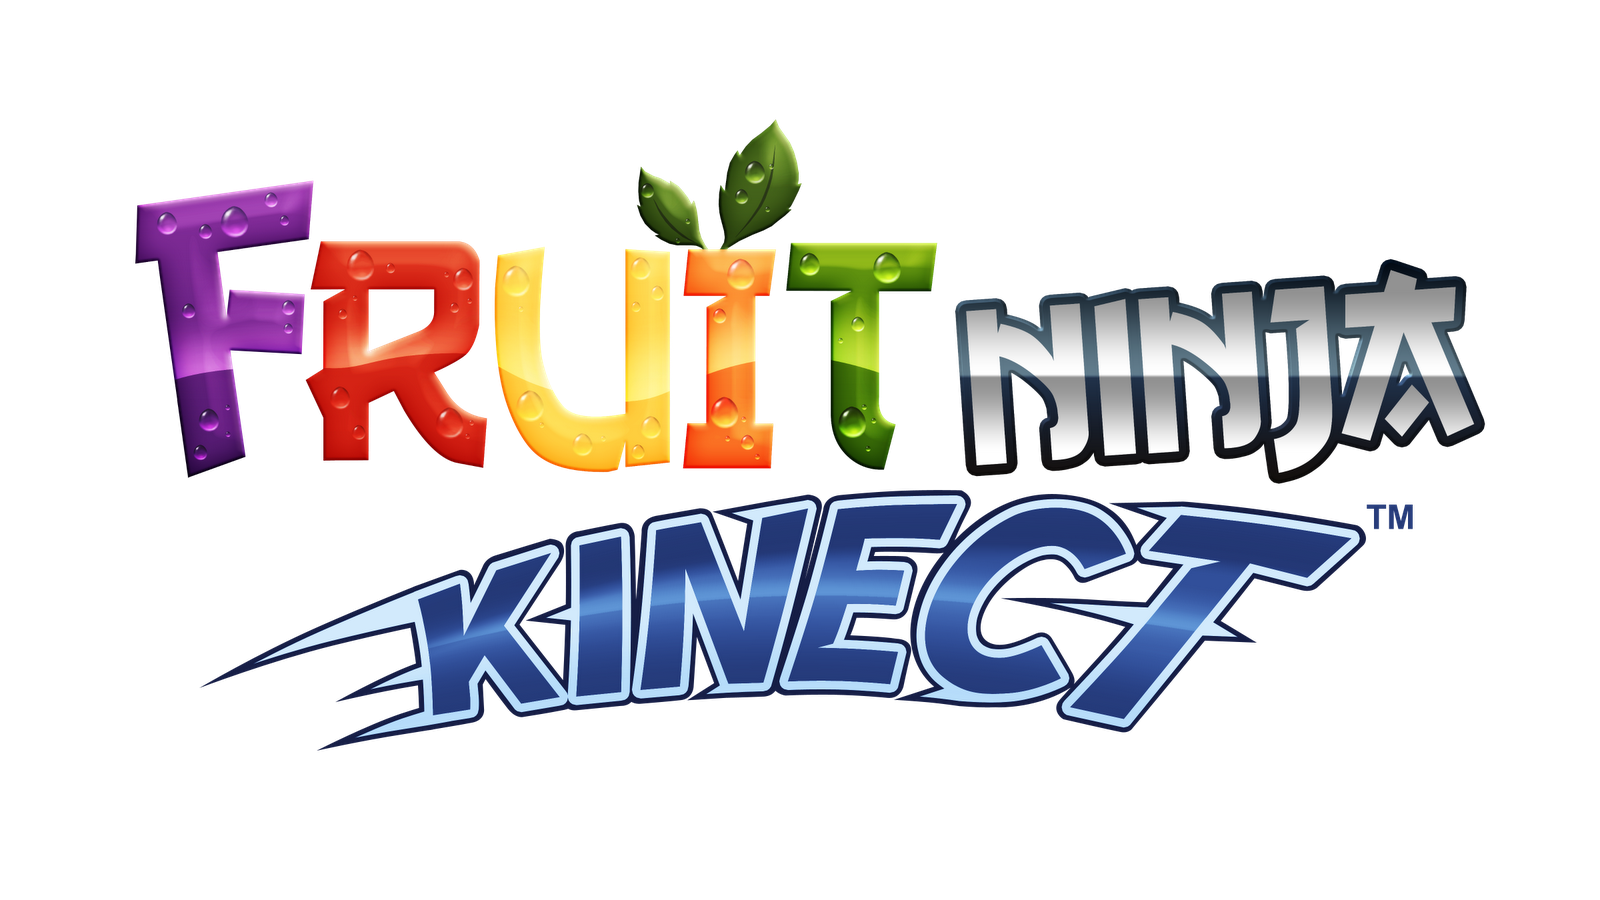 High Resolution Wallpaper | Fruit Ninja Kinect 1600x900 px